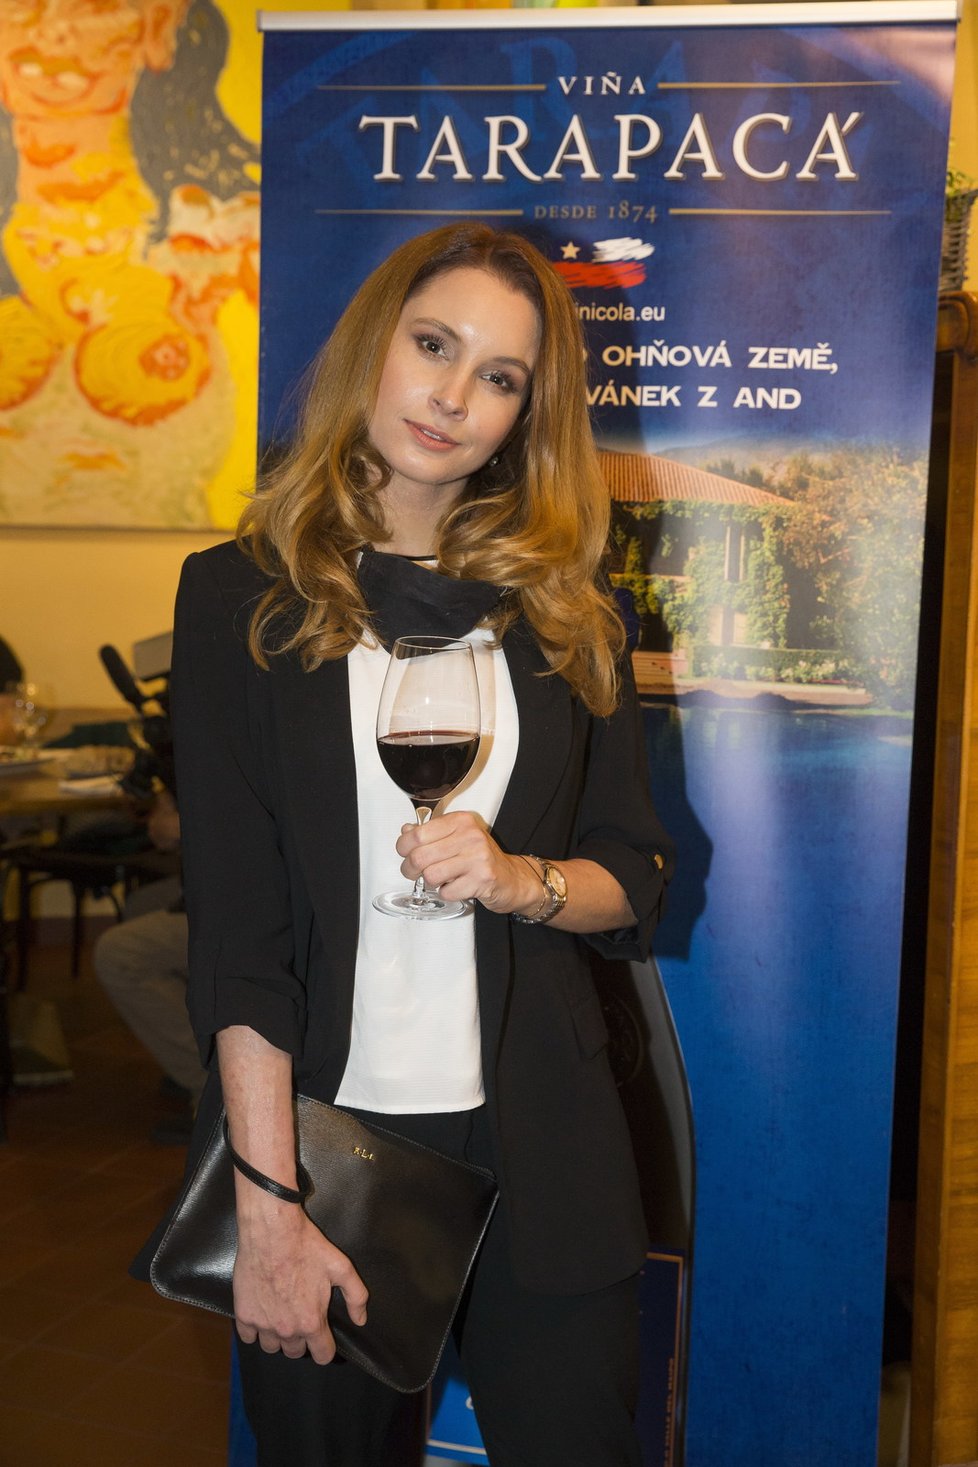 Denisa Nesvačilová na oslavě 145. výročí vinařství Tarapaca